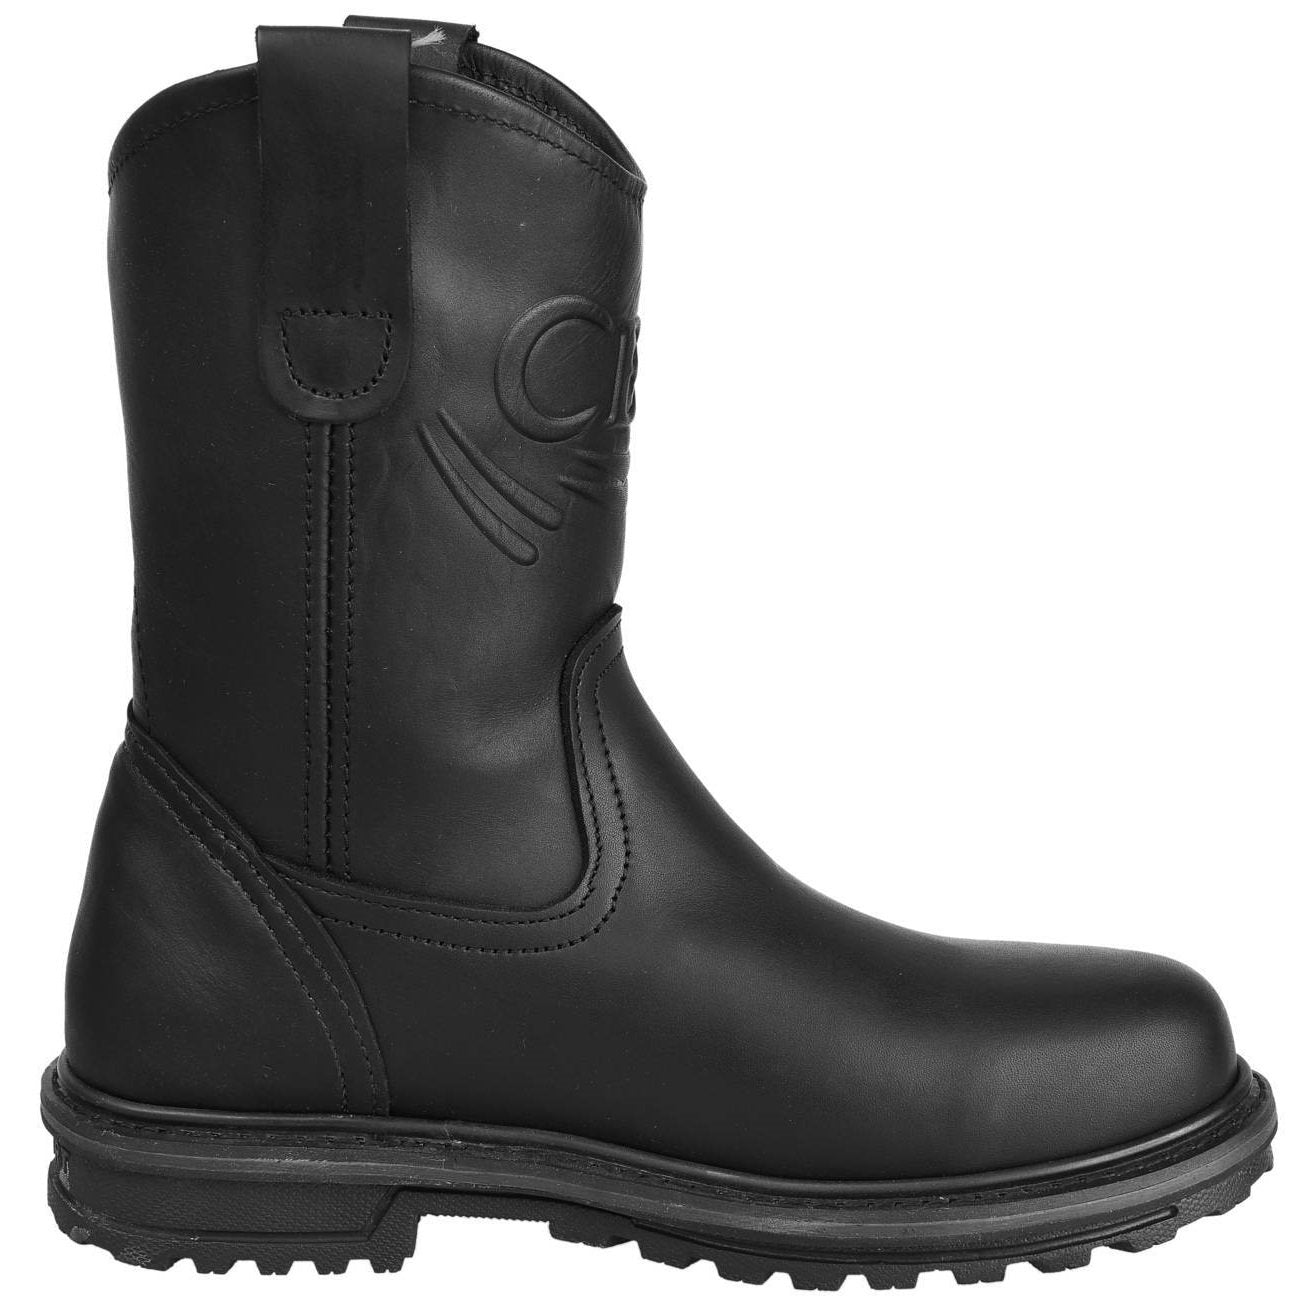 Men's Work Boots - Steel Toe & Heavy Duty - Black Work Boots - Cebu - Pull On Work Boots - Black Wellington Work Boots